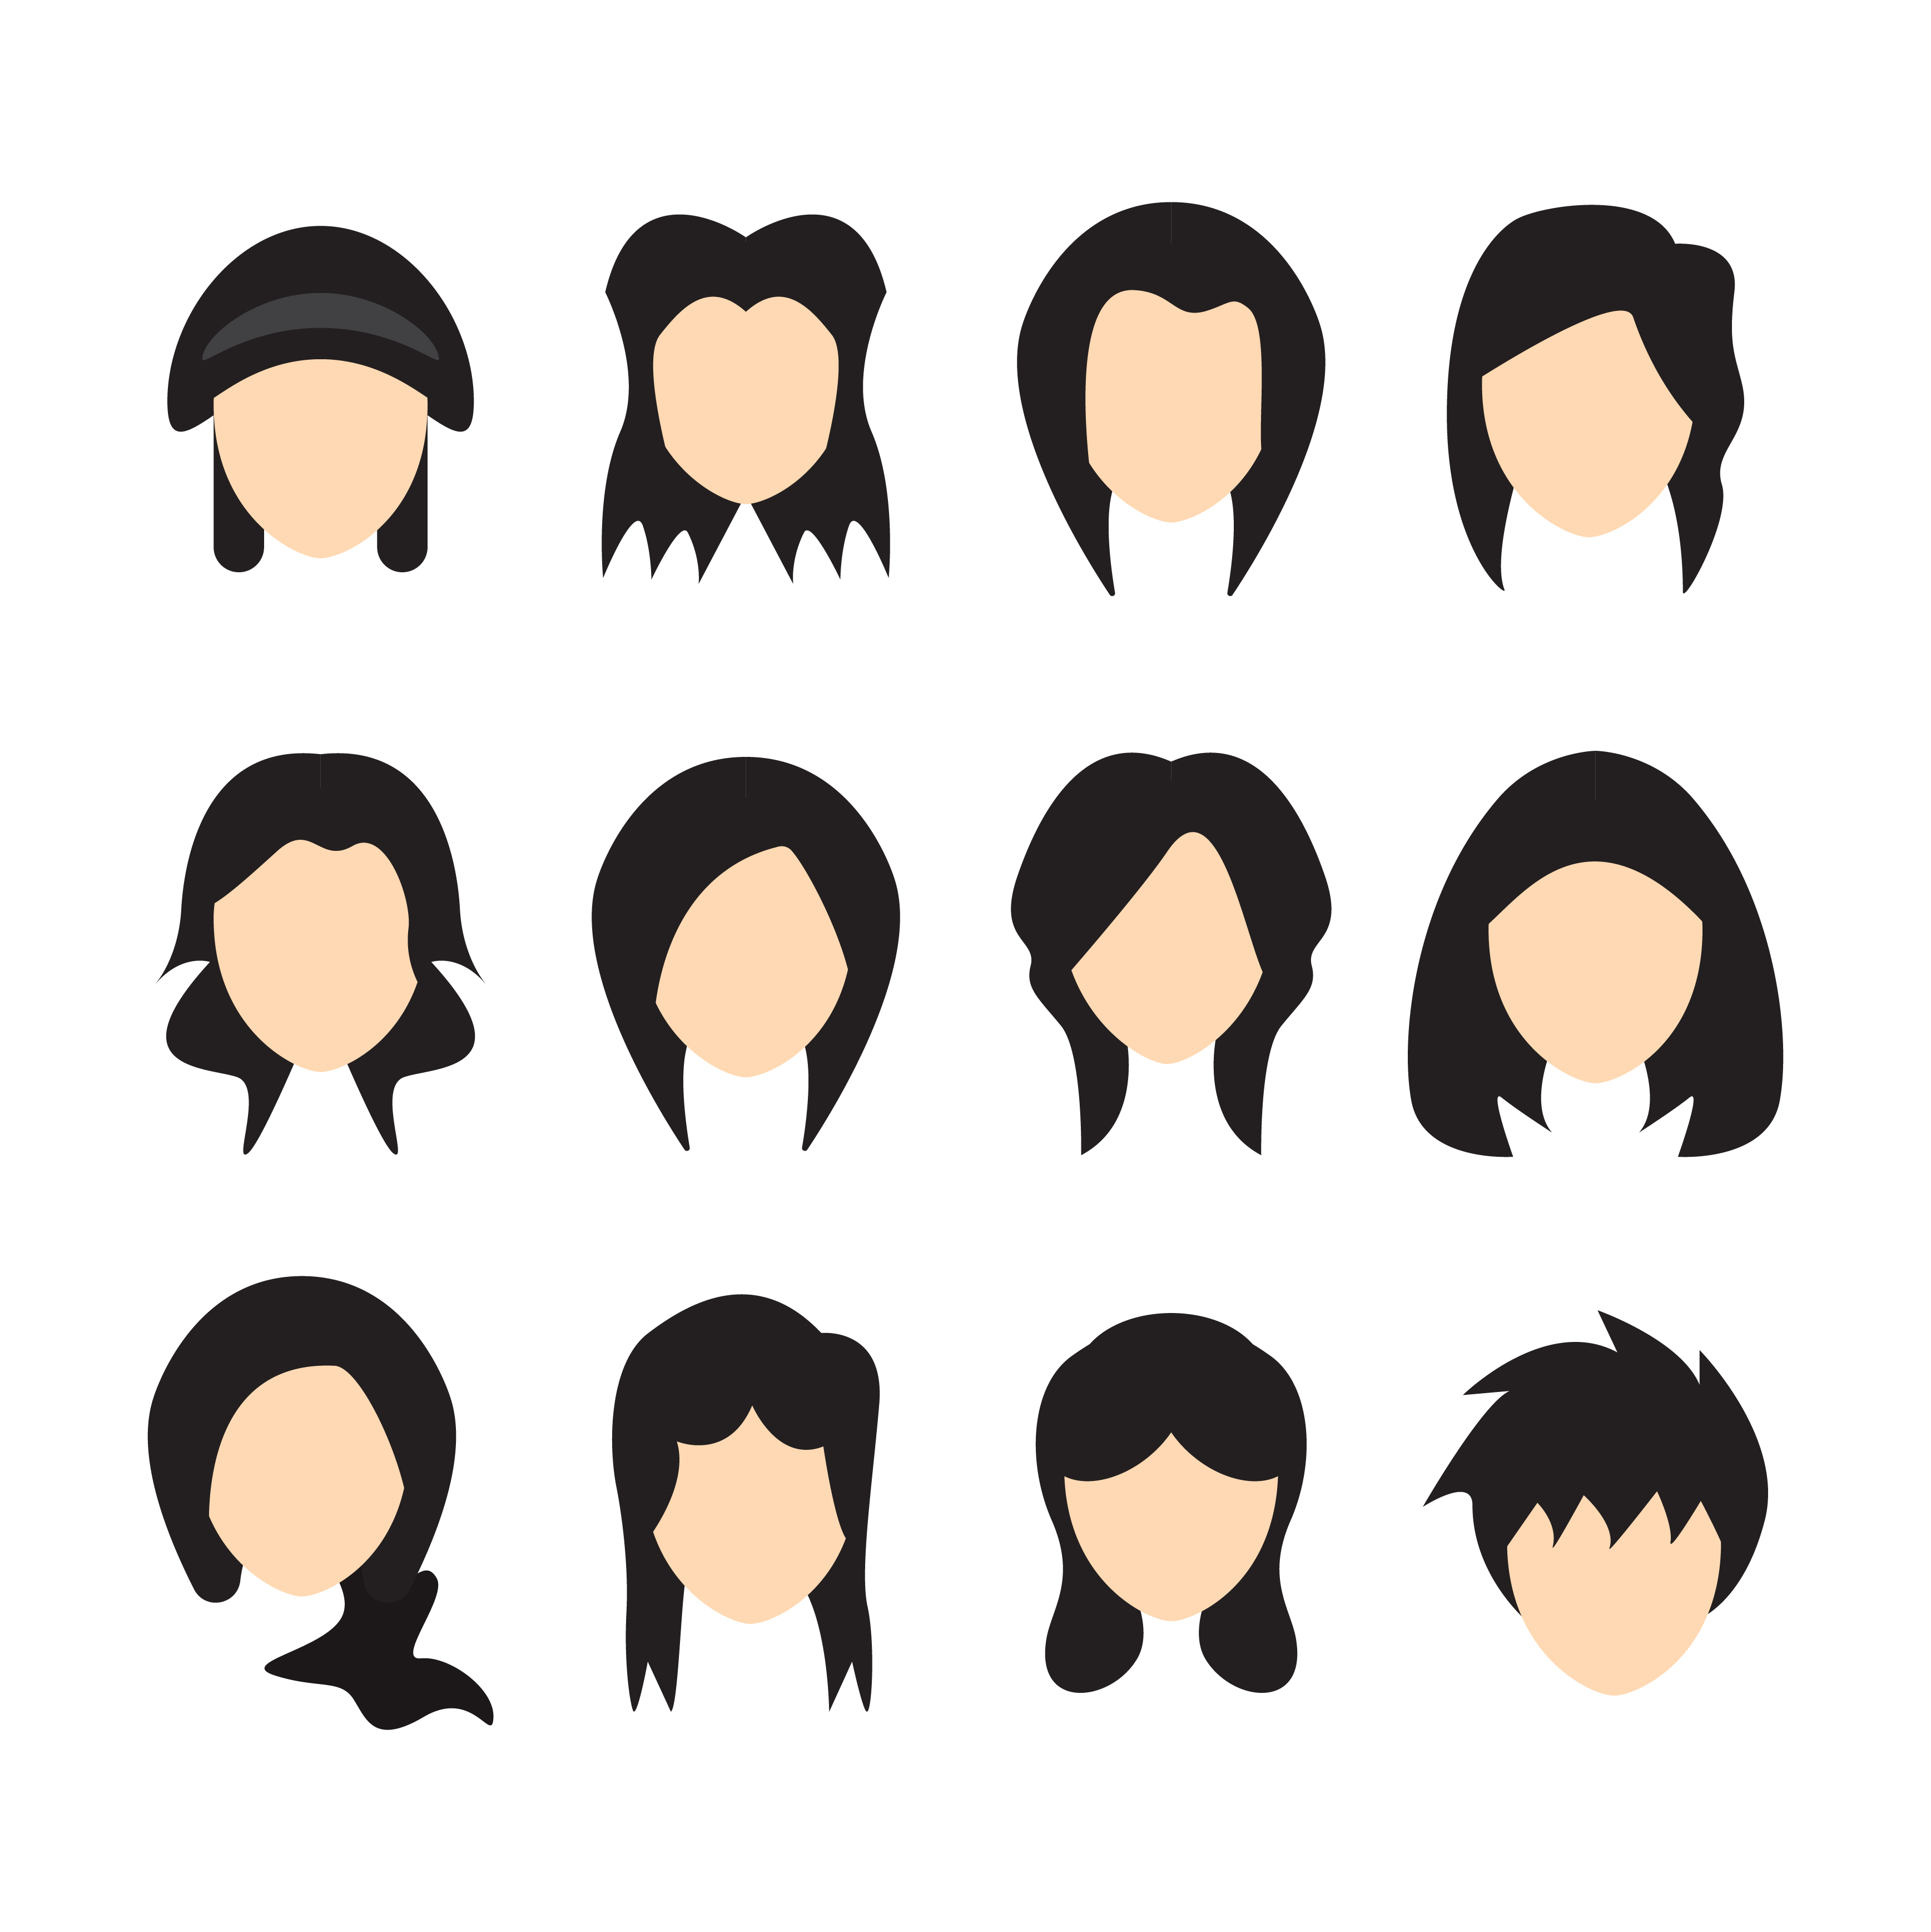 Vector illustration of Hair styles for women. Flat design 